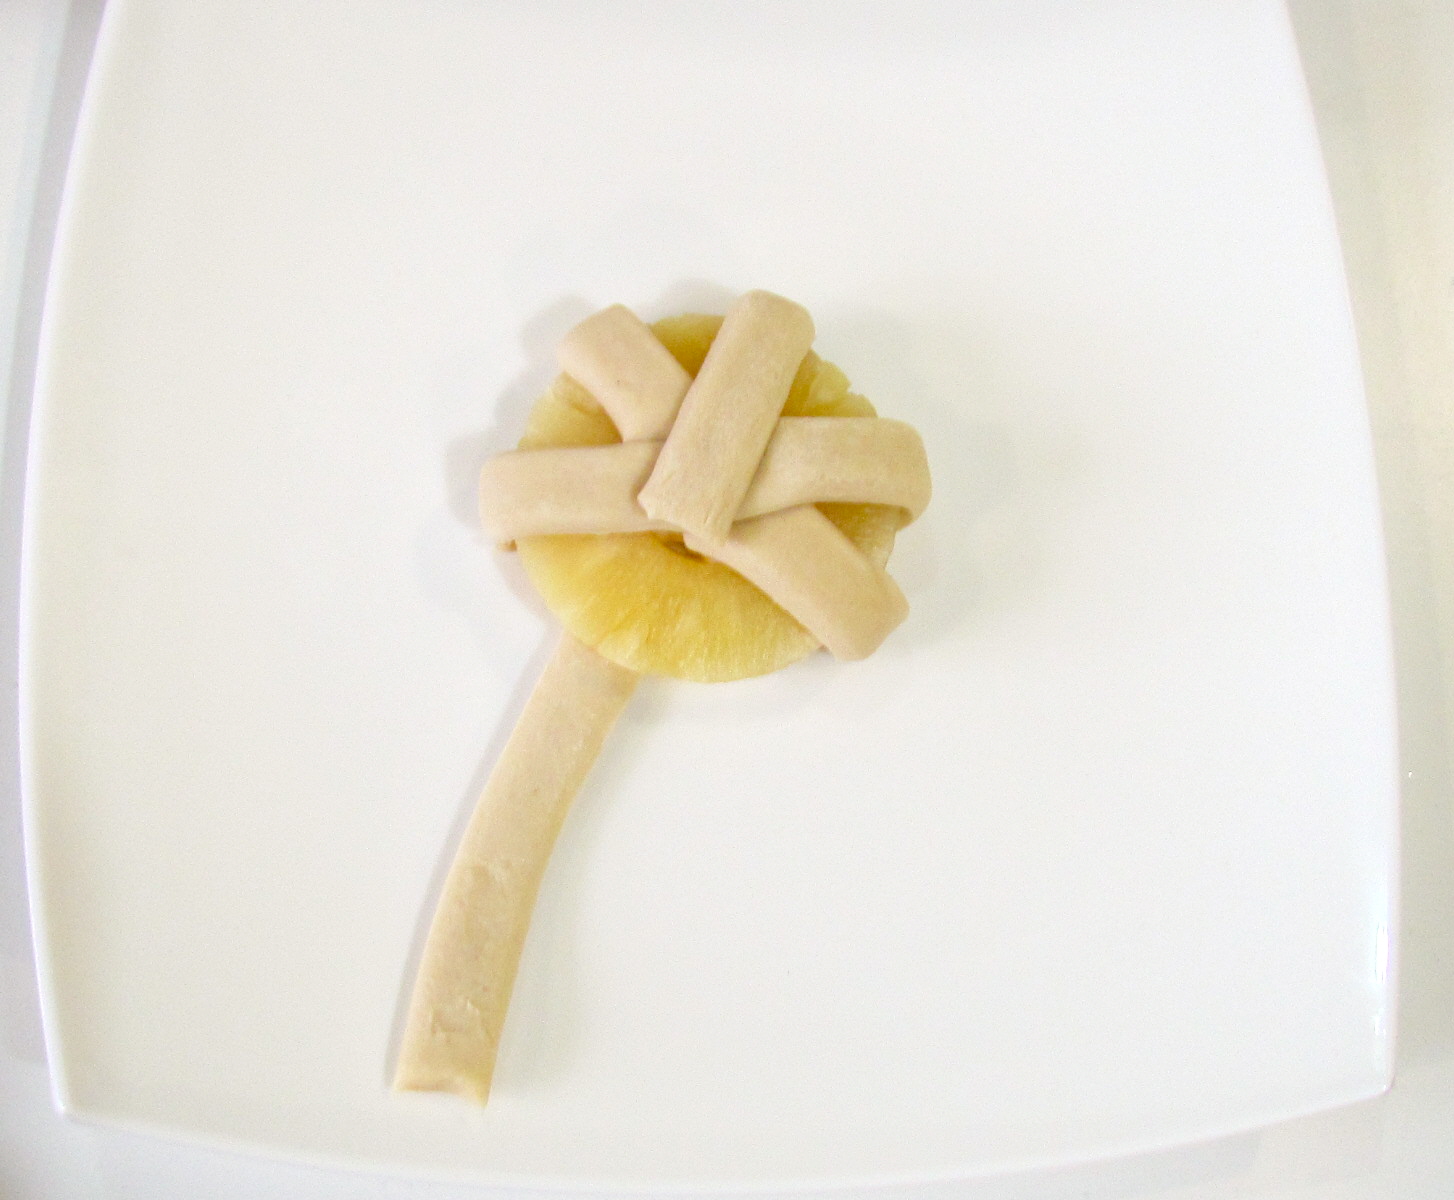 Dessertbroodjes met ananasringen uit blik (oven)